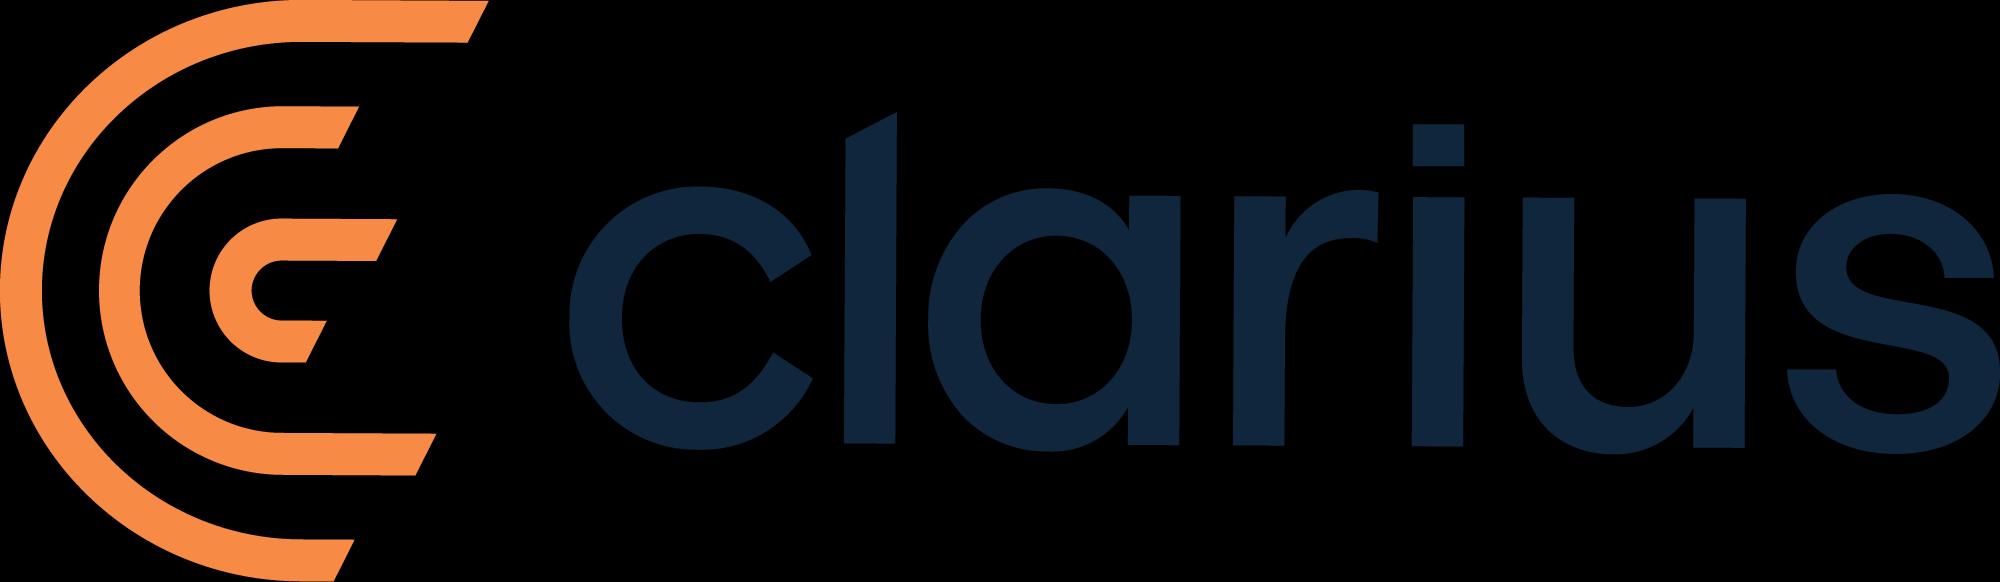 Clarius Mobile Health_logo